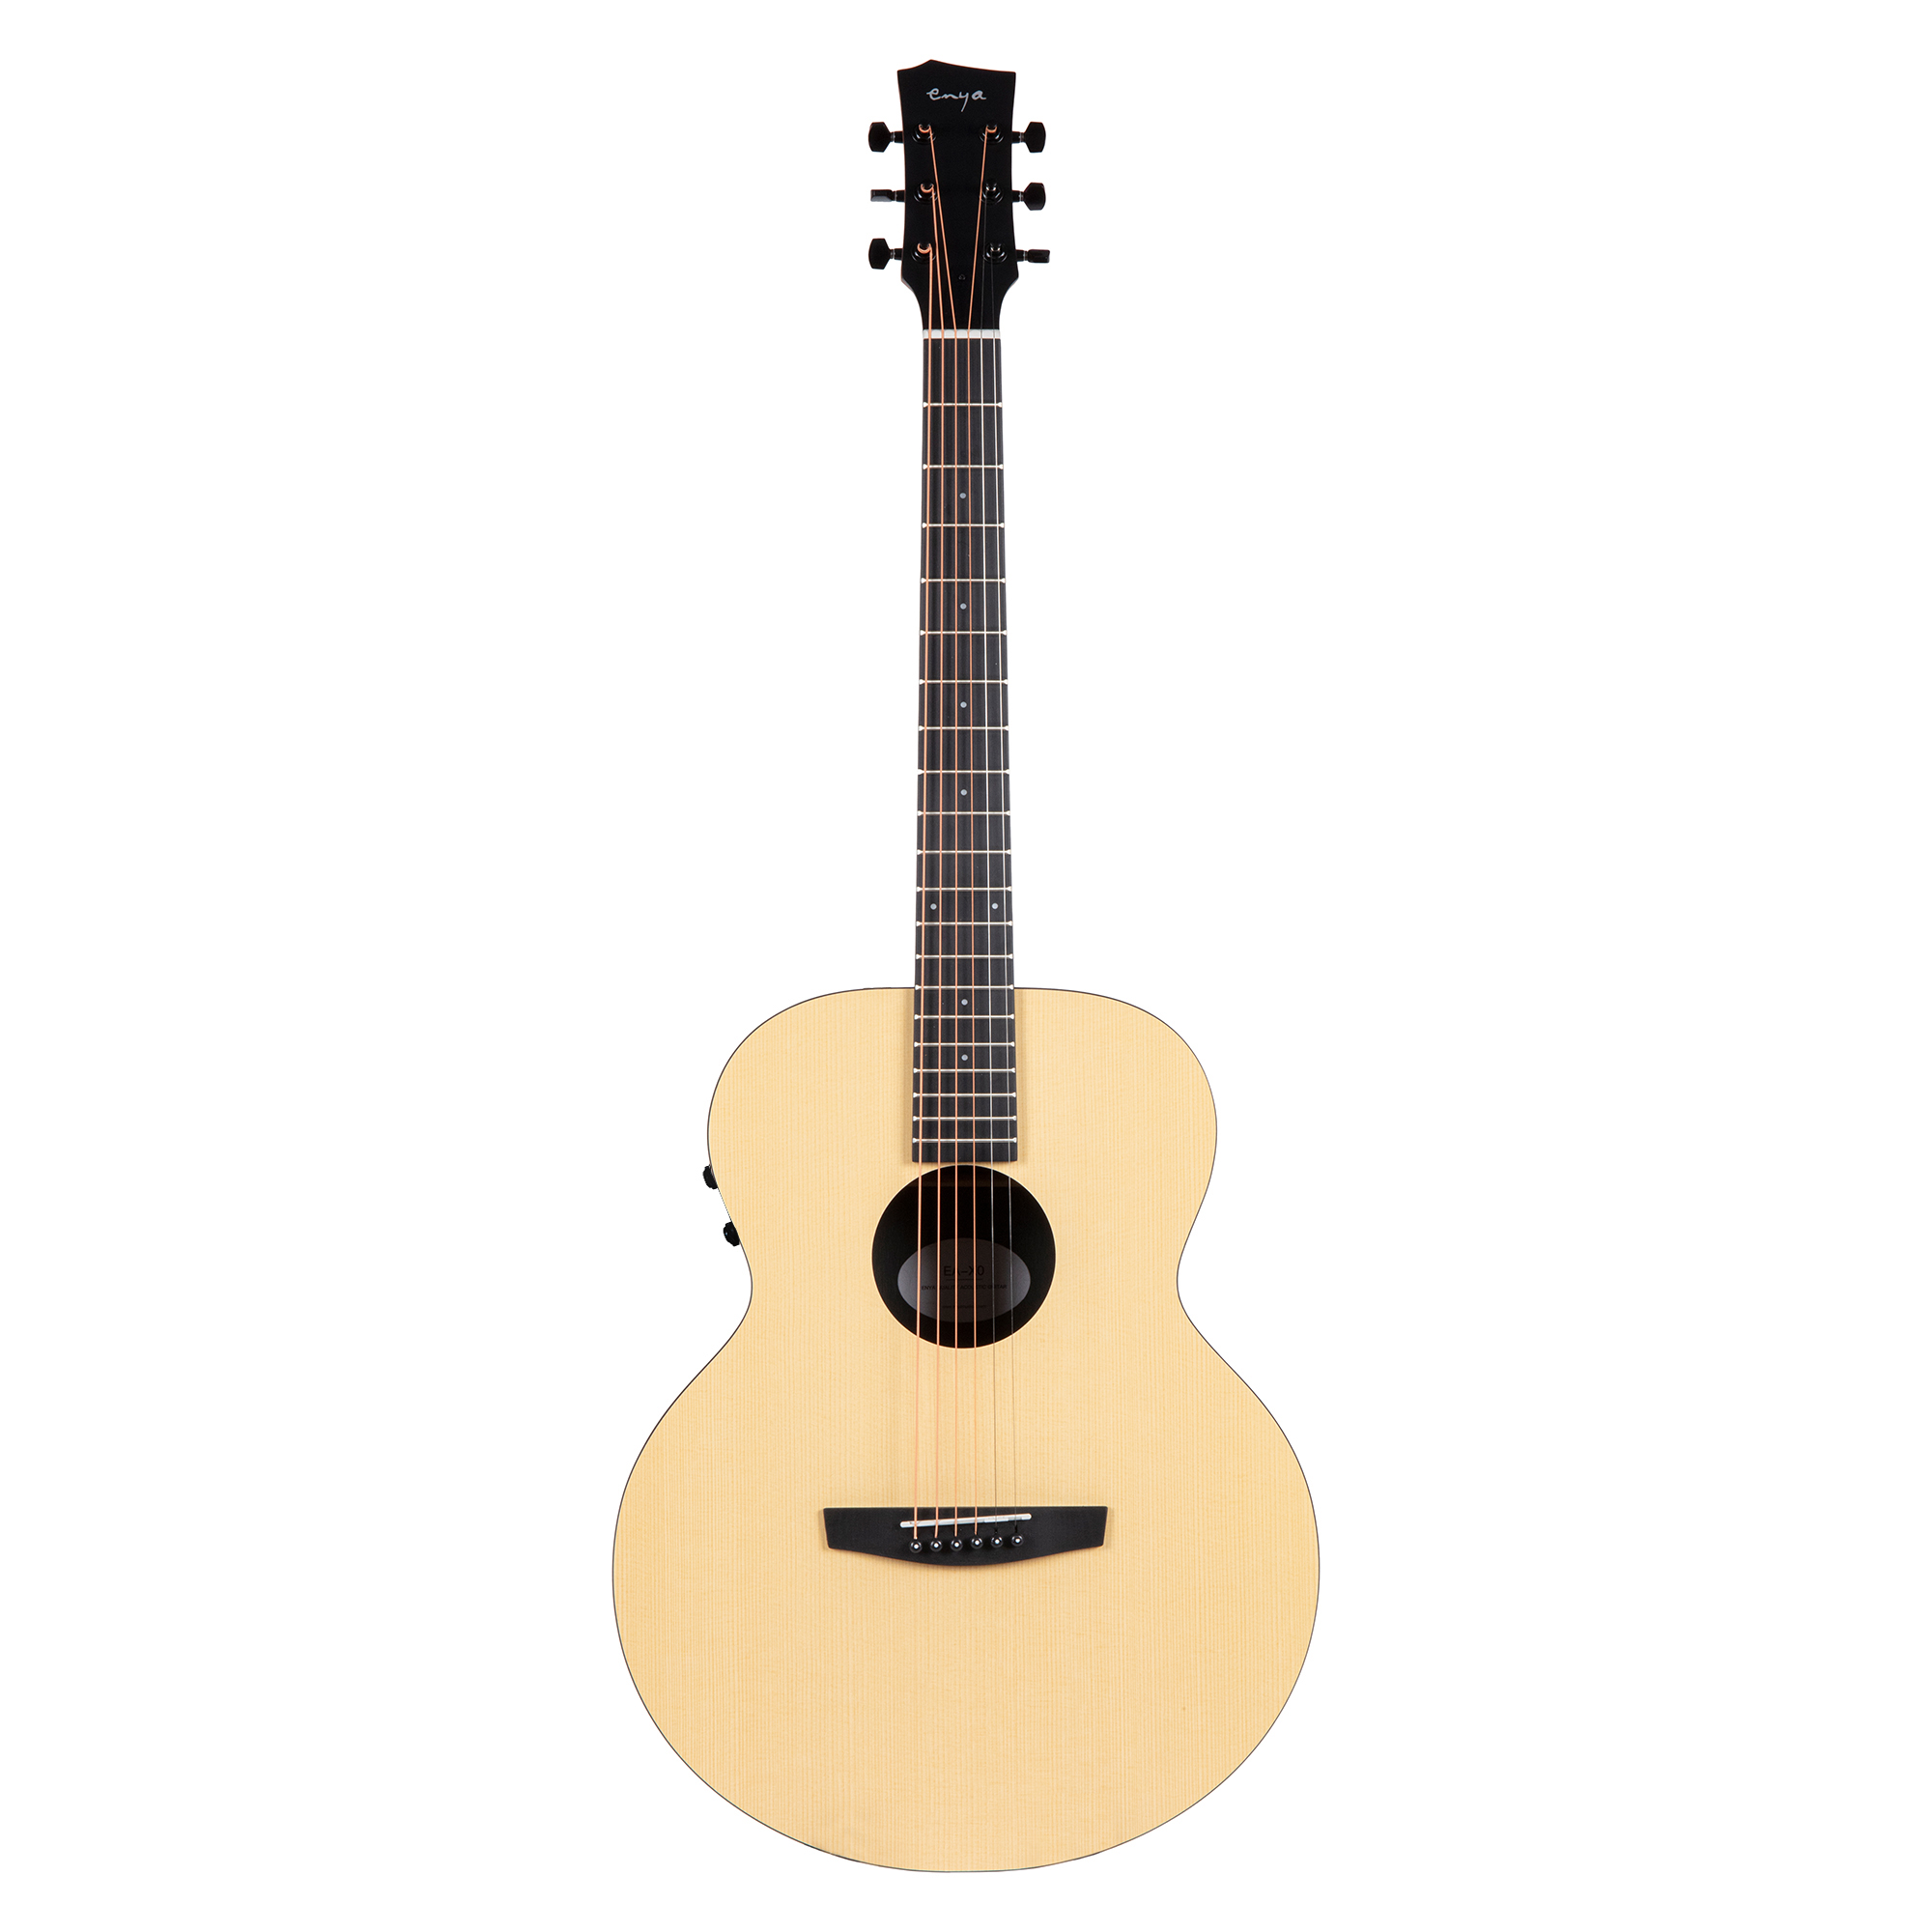 Enya EA X0 EQ Transacoustic Grand Auditorium Acoustic Guitar Online price in India